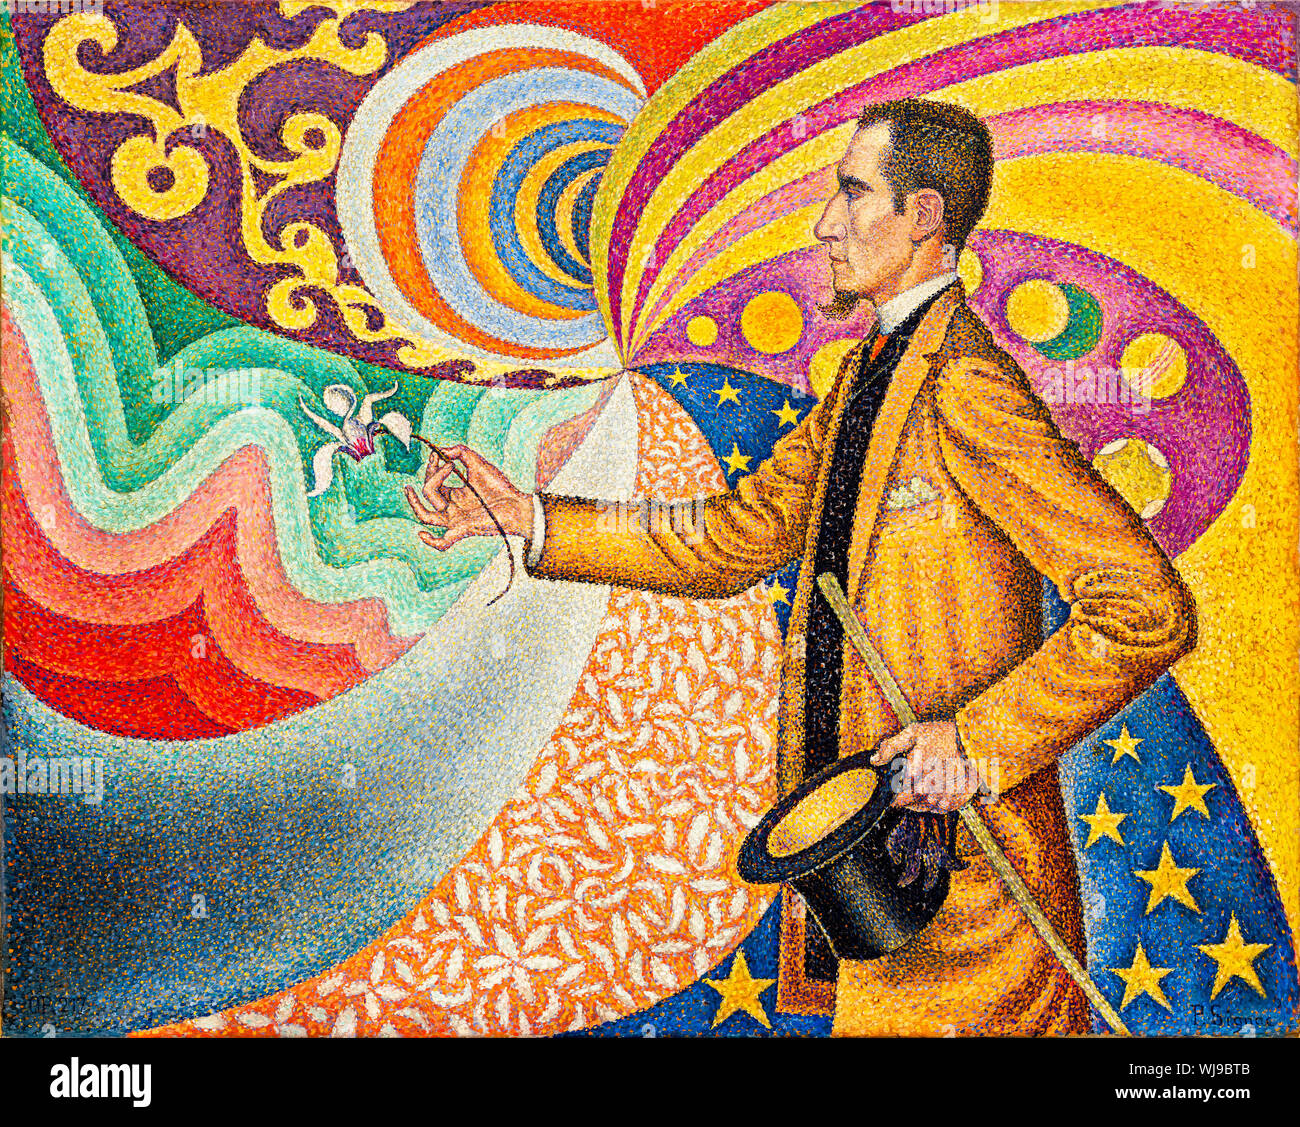 Paul Signac, pittura ritratto, Opus 217, contro lo smalto di uno sfondo ritmico con Beats and Angles, toni e tinte, Ritratto di M. Félix Fénéon nel 1890, 1890, pittura neoimpressionista - arte moderna Foto Stock